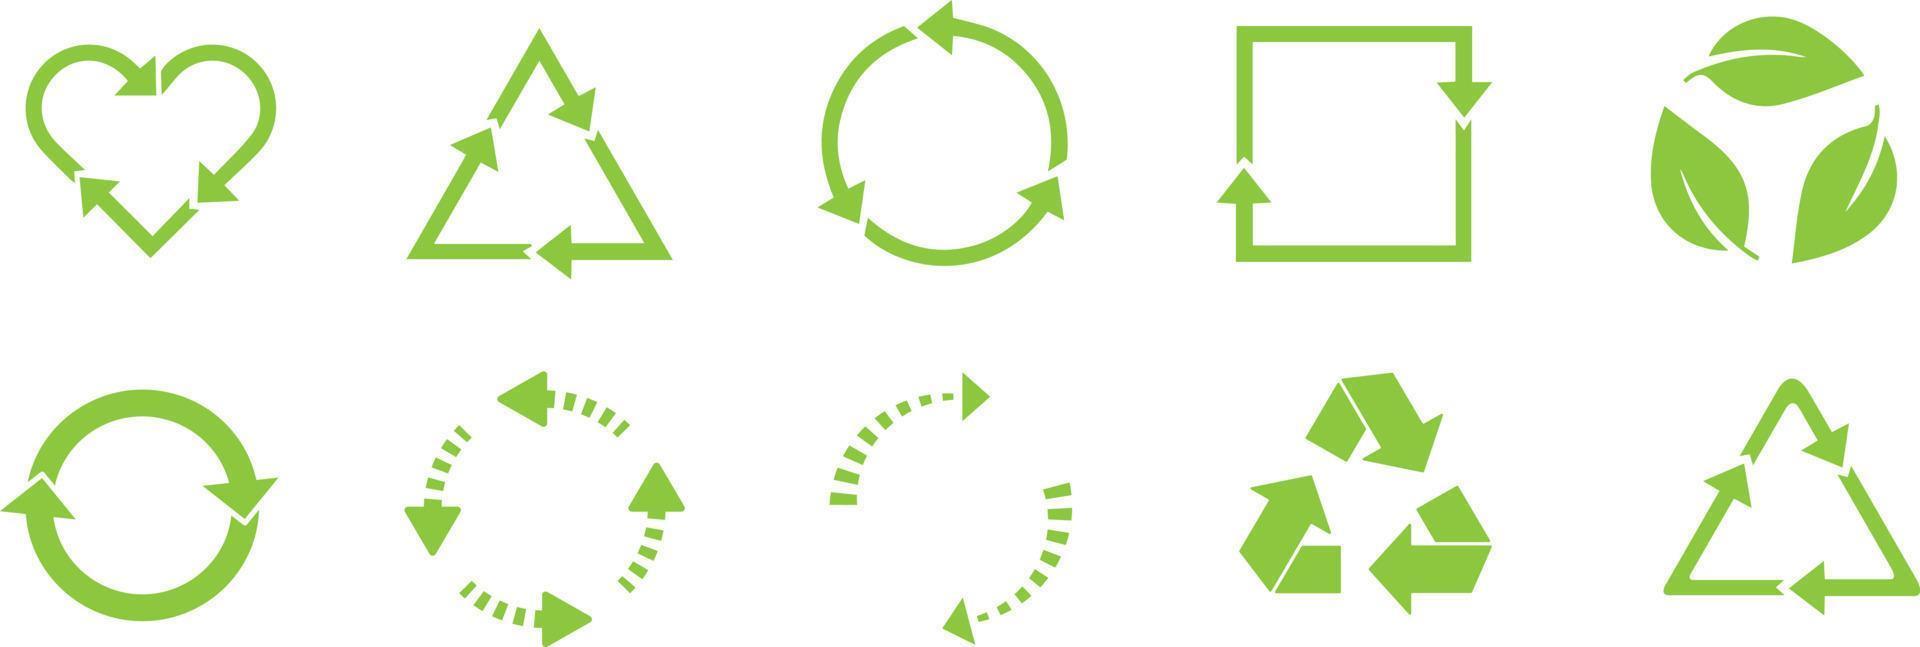 recycler le jeu d'icônes. les flèches, le coeur et la feuille recyclent le symbole écologique. angles arrondis. signes recyclés vector illustration isolé sur fond blanc.